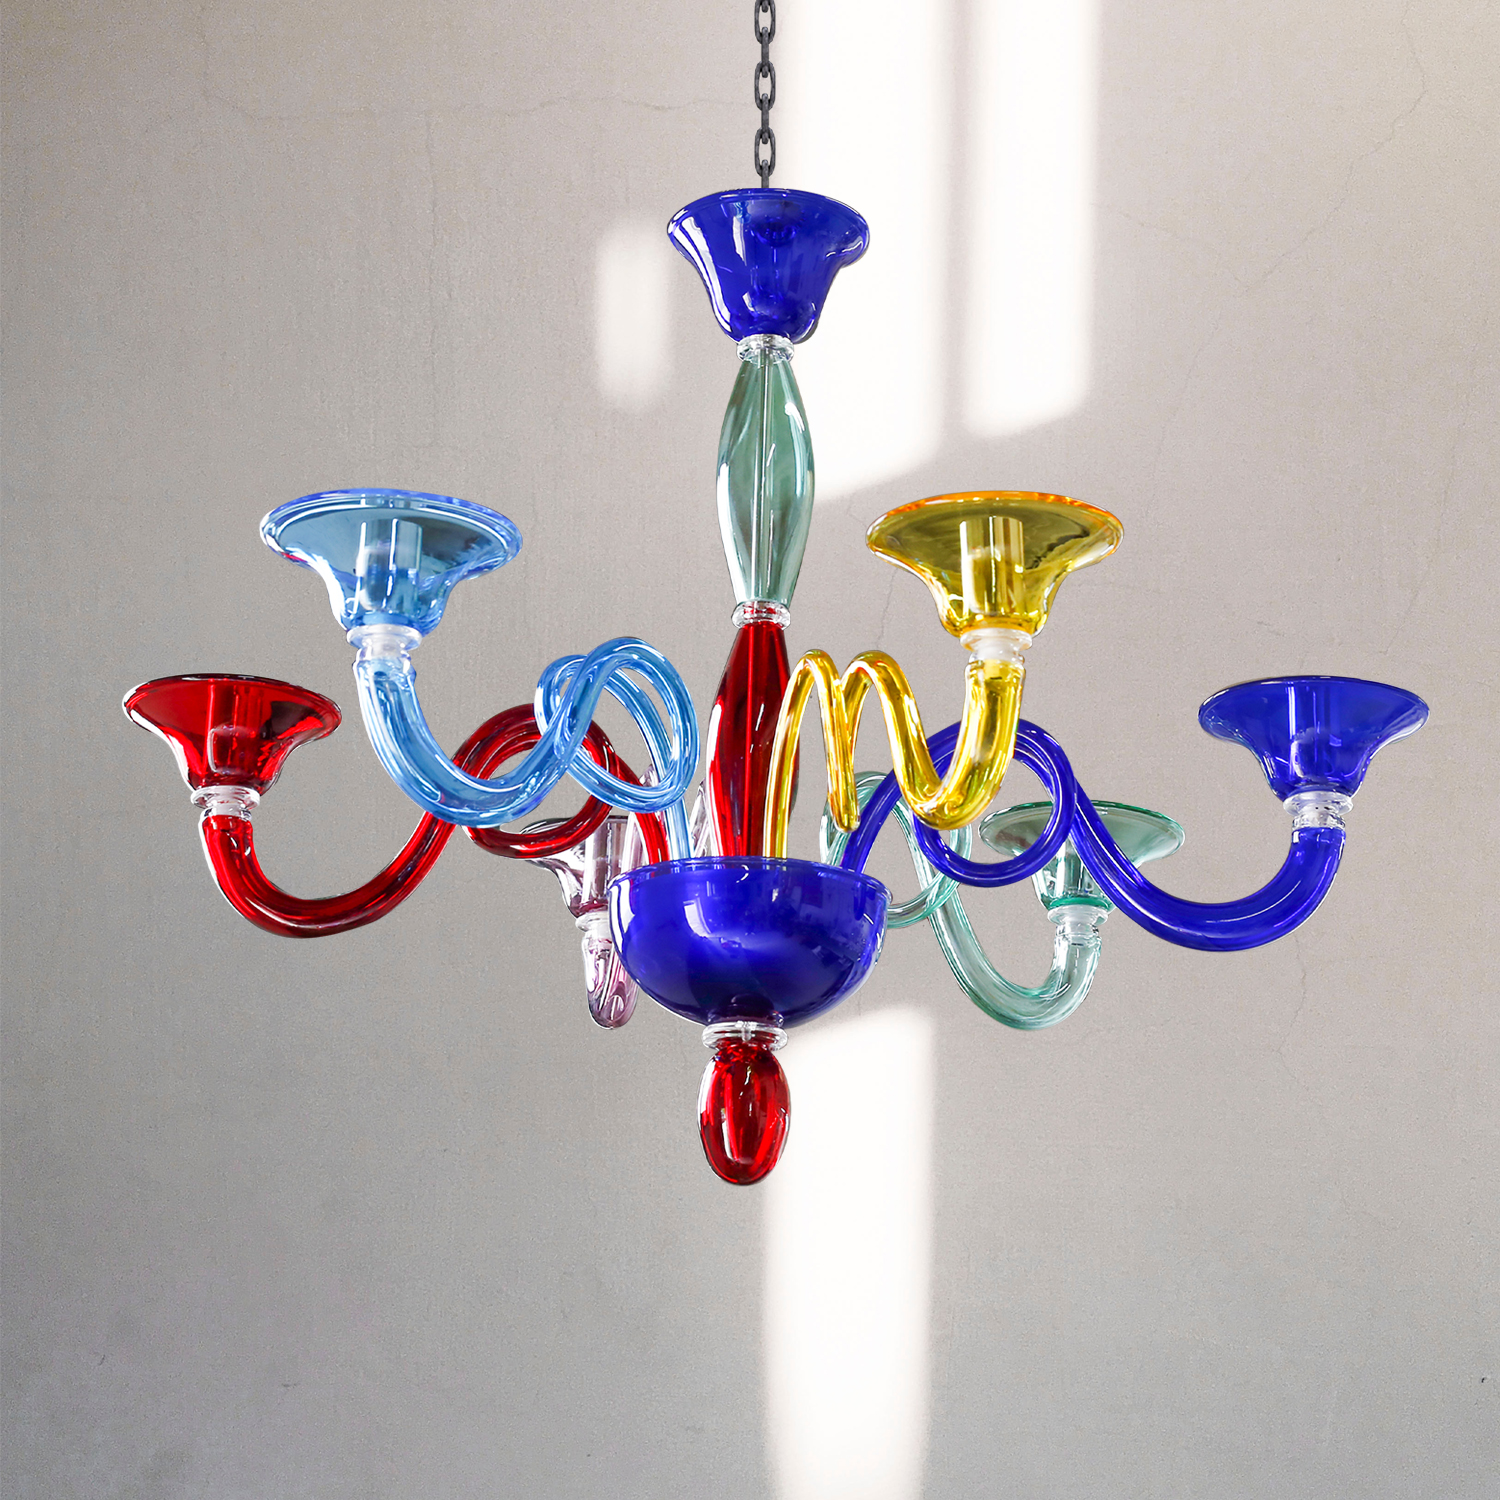 lampadario murano multicolor brazil prodotto dalla fabbrica lampadari Bottega Veneziana made in italy